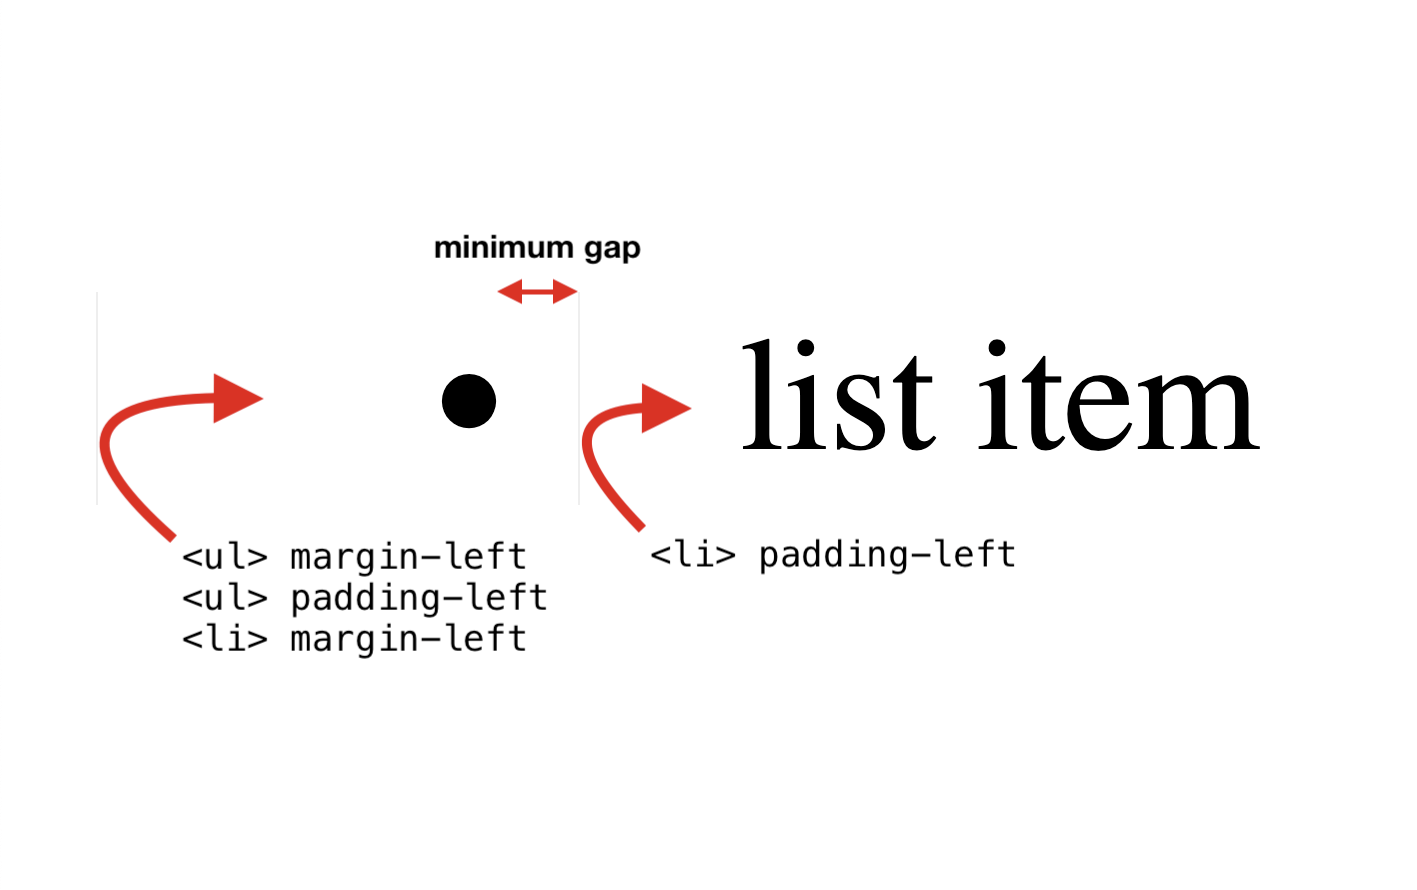 Las tres primeras propiedades: UL margin-left, UL padding-left, LI margin-left. Cuarta propiedad: LI padding-left.